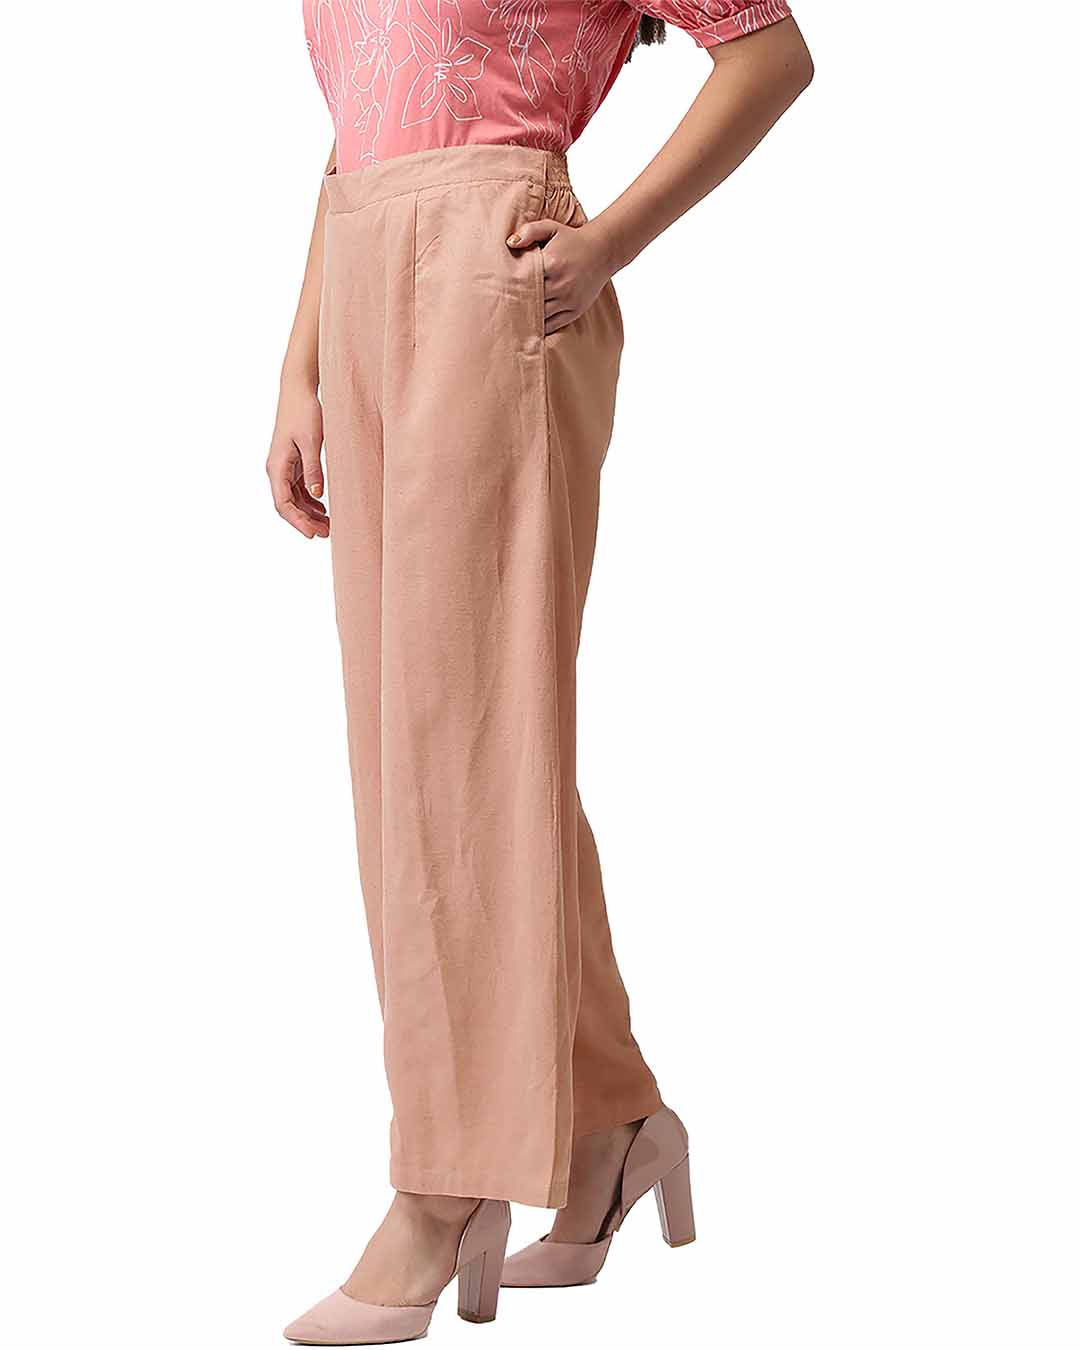 Buy Go Colors Women Jean Grey Linen Cargo Pant online